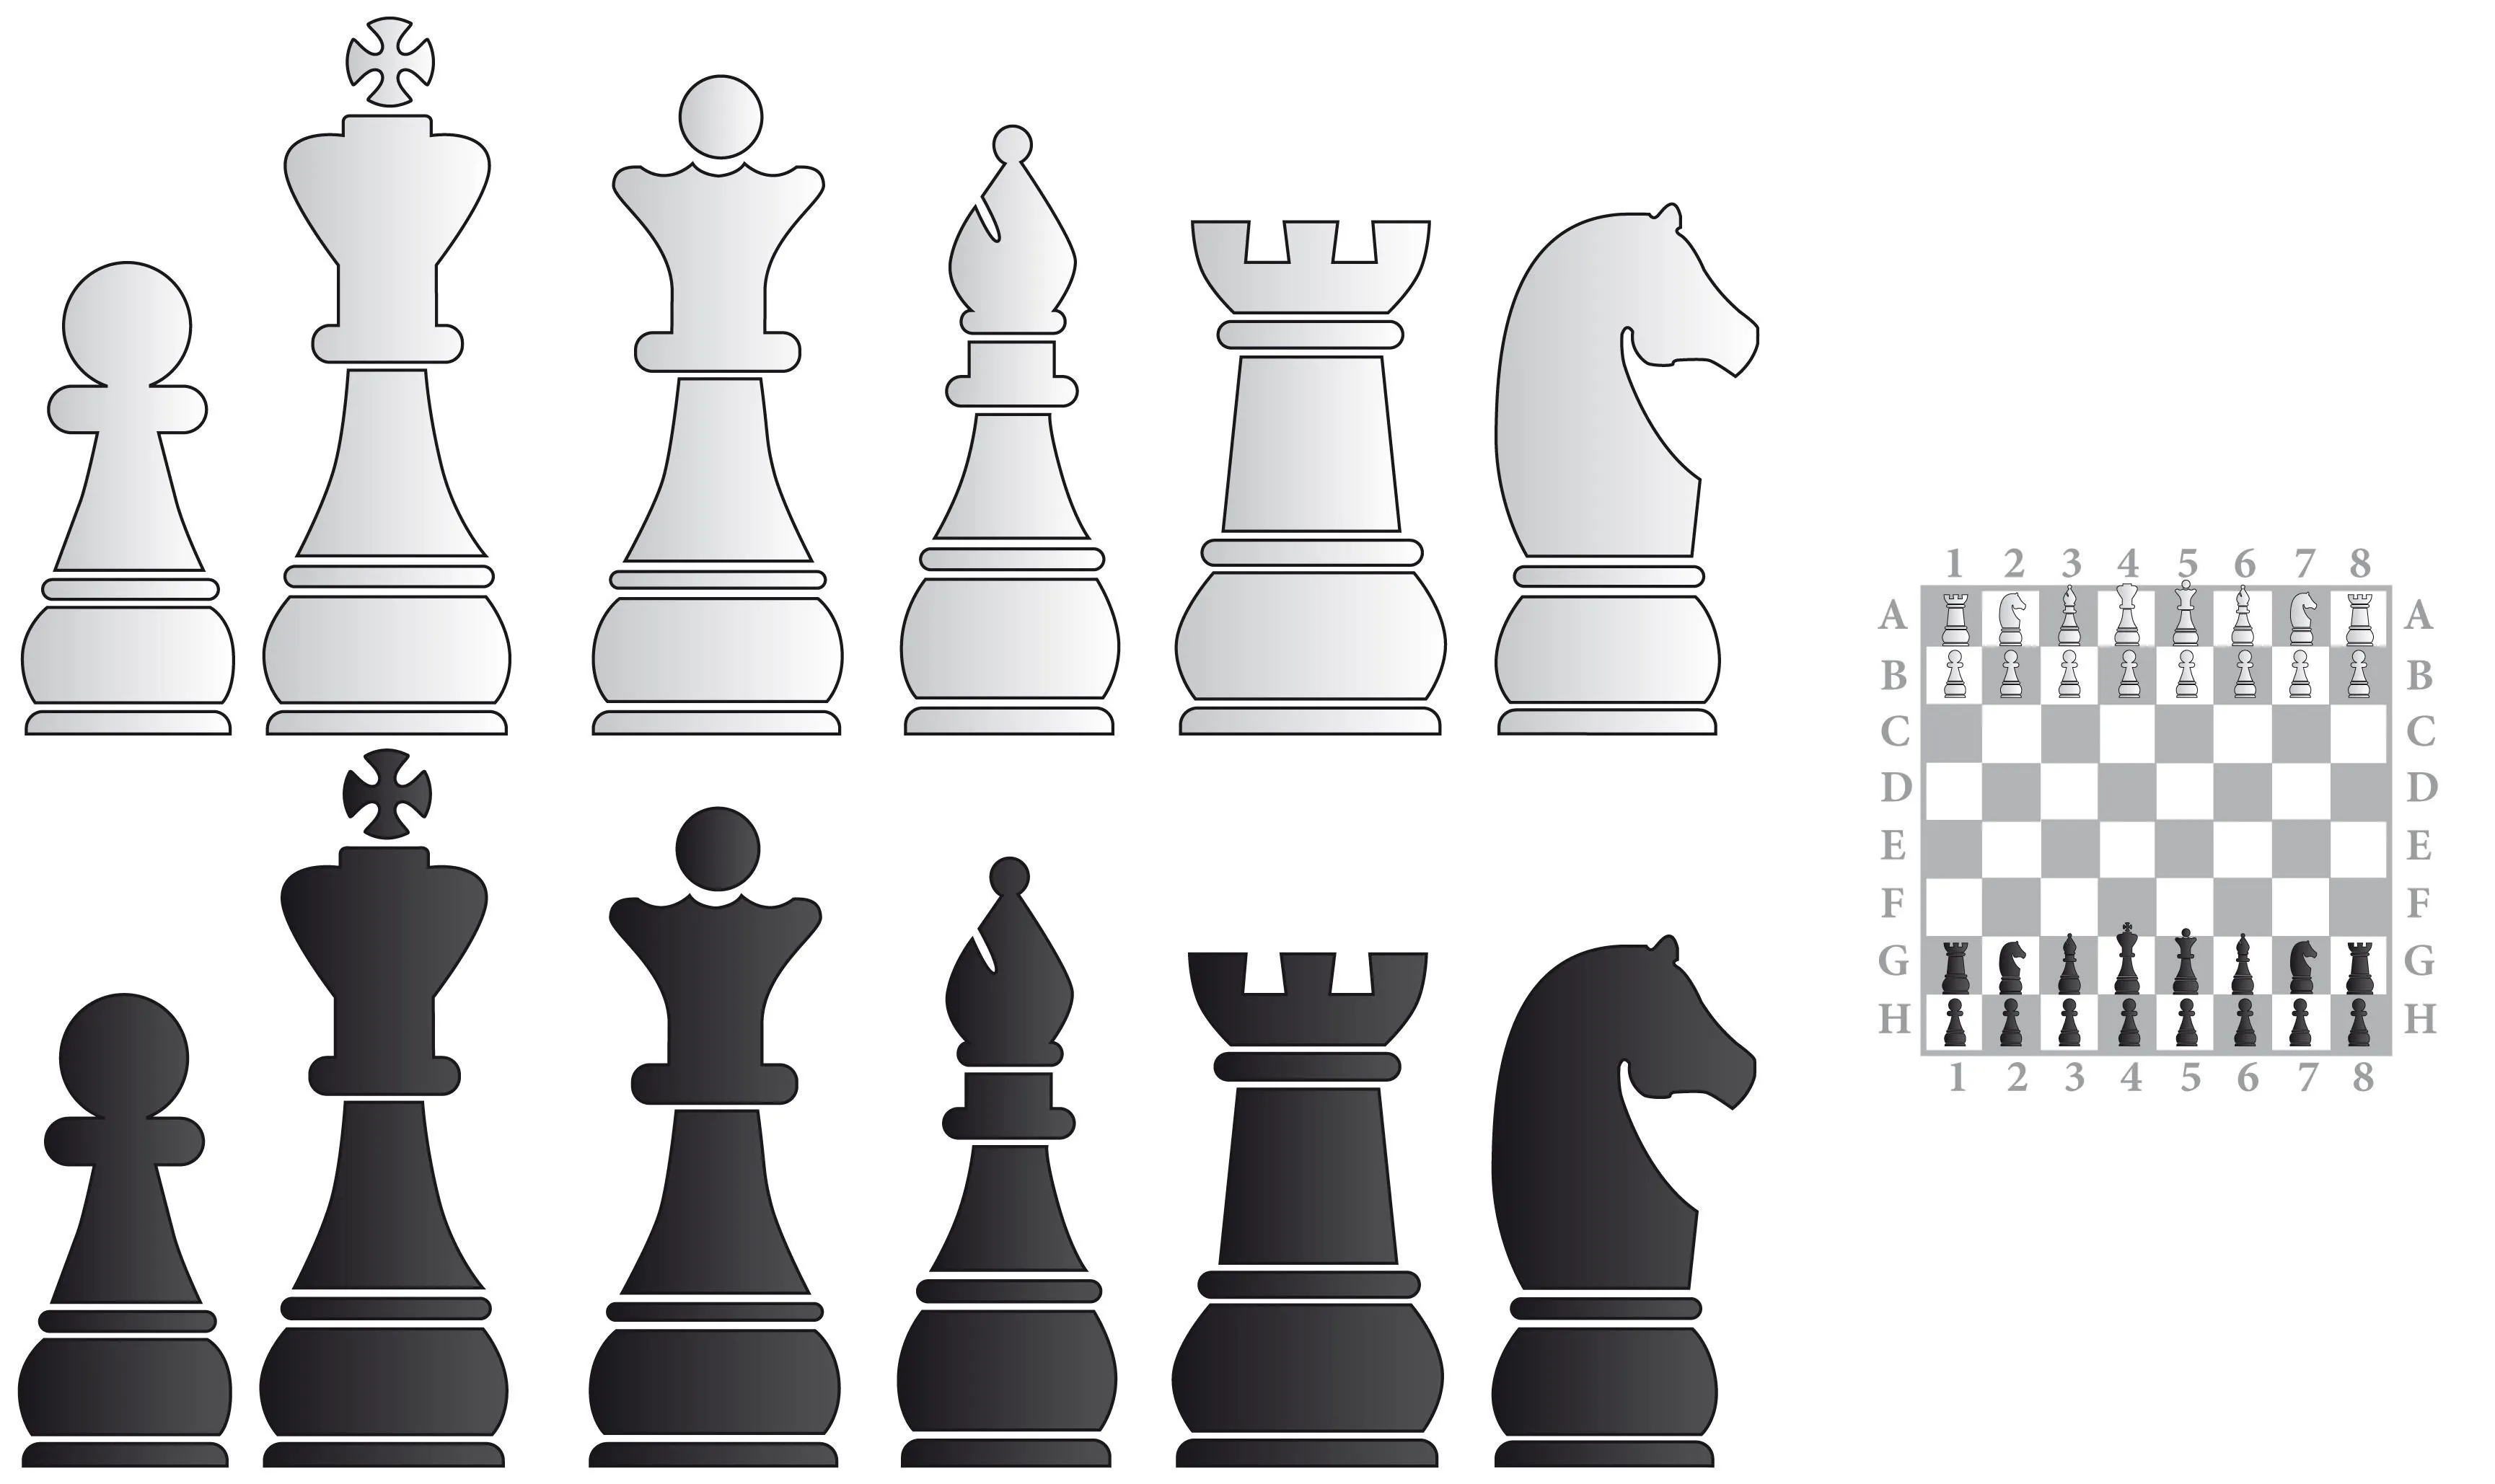 Сколько фигур на шахматной доске отличается по цвету? Узнайте количество предметов белого и черного цвета!